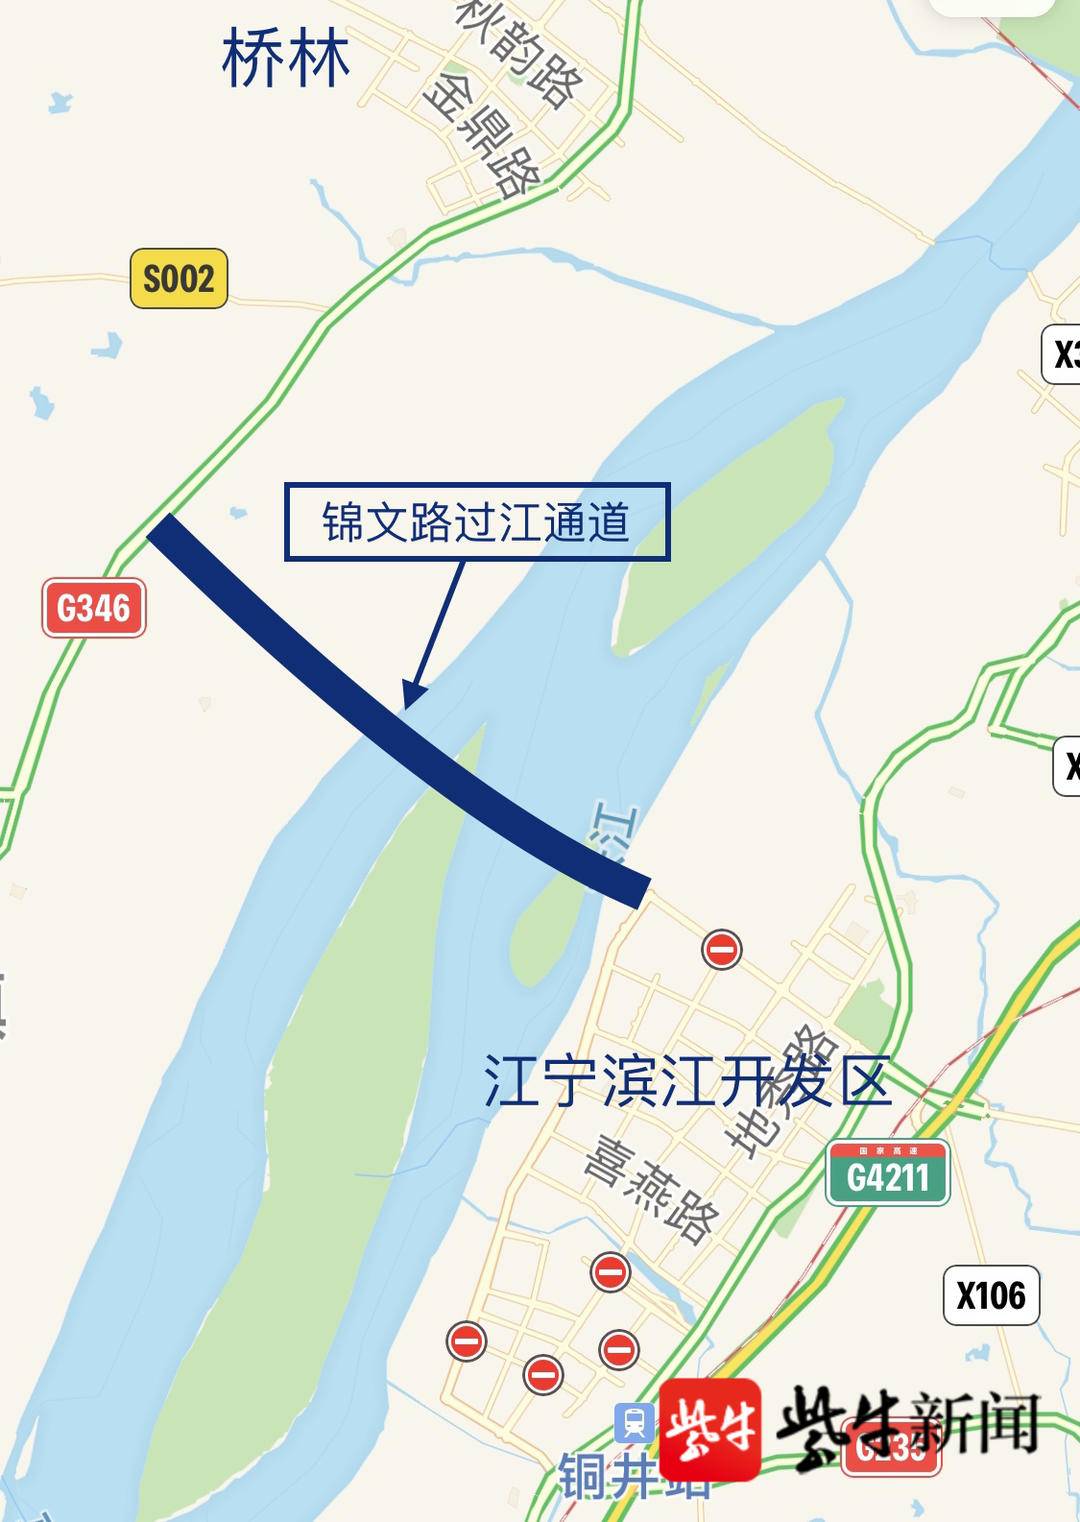 锦文路过江通道将建双层跨江大桥-中国网地产